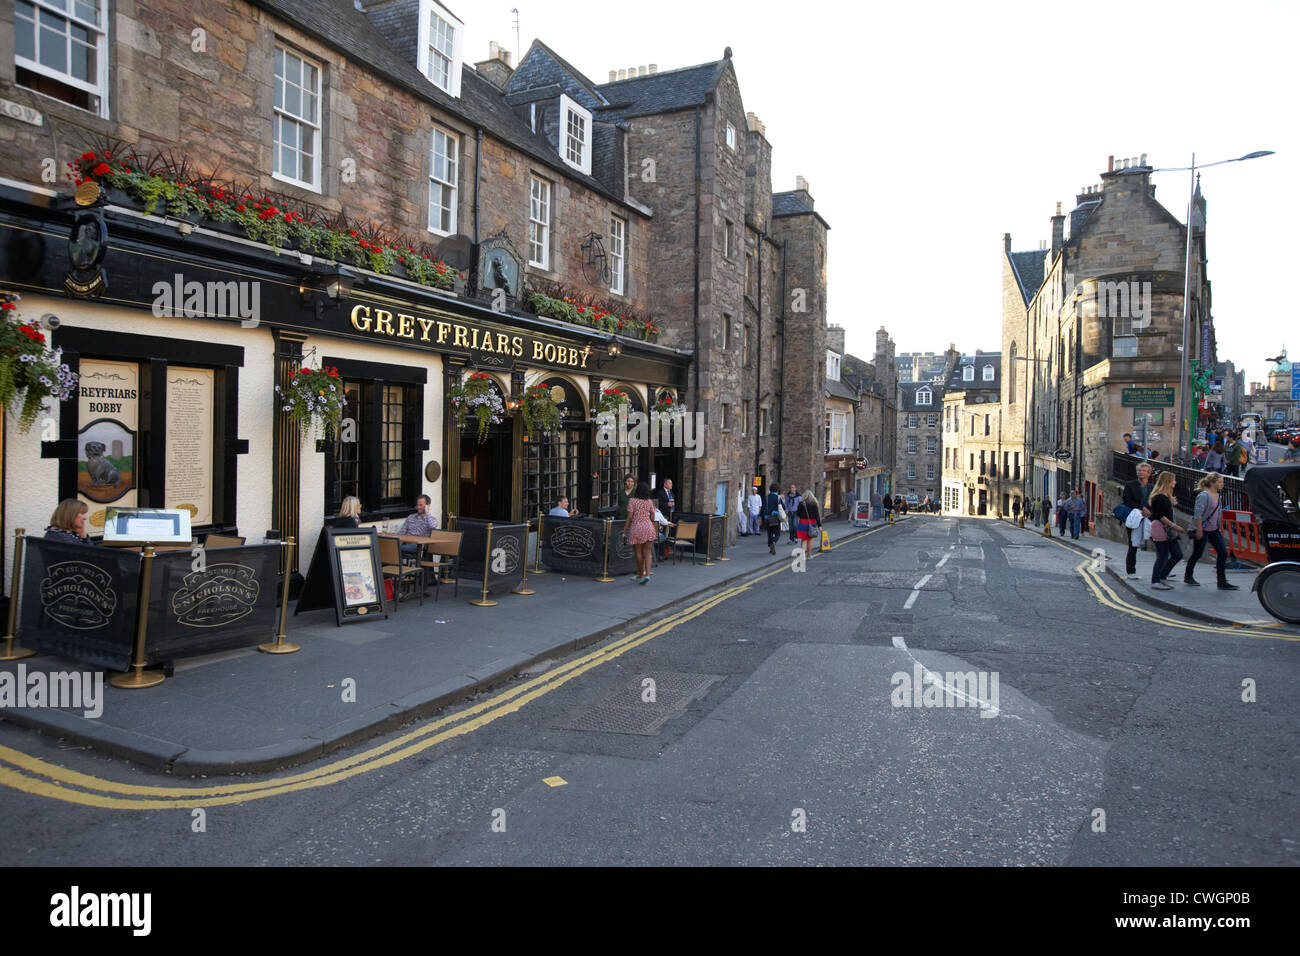 Greyfriars Bobby Bar und Candlemaker row, Edinburgh, Schottland, England, Vereinigtes Königreich Stockfoto